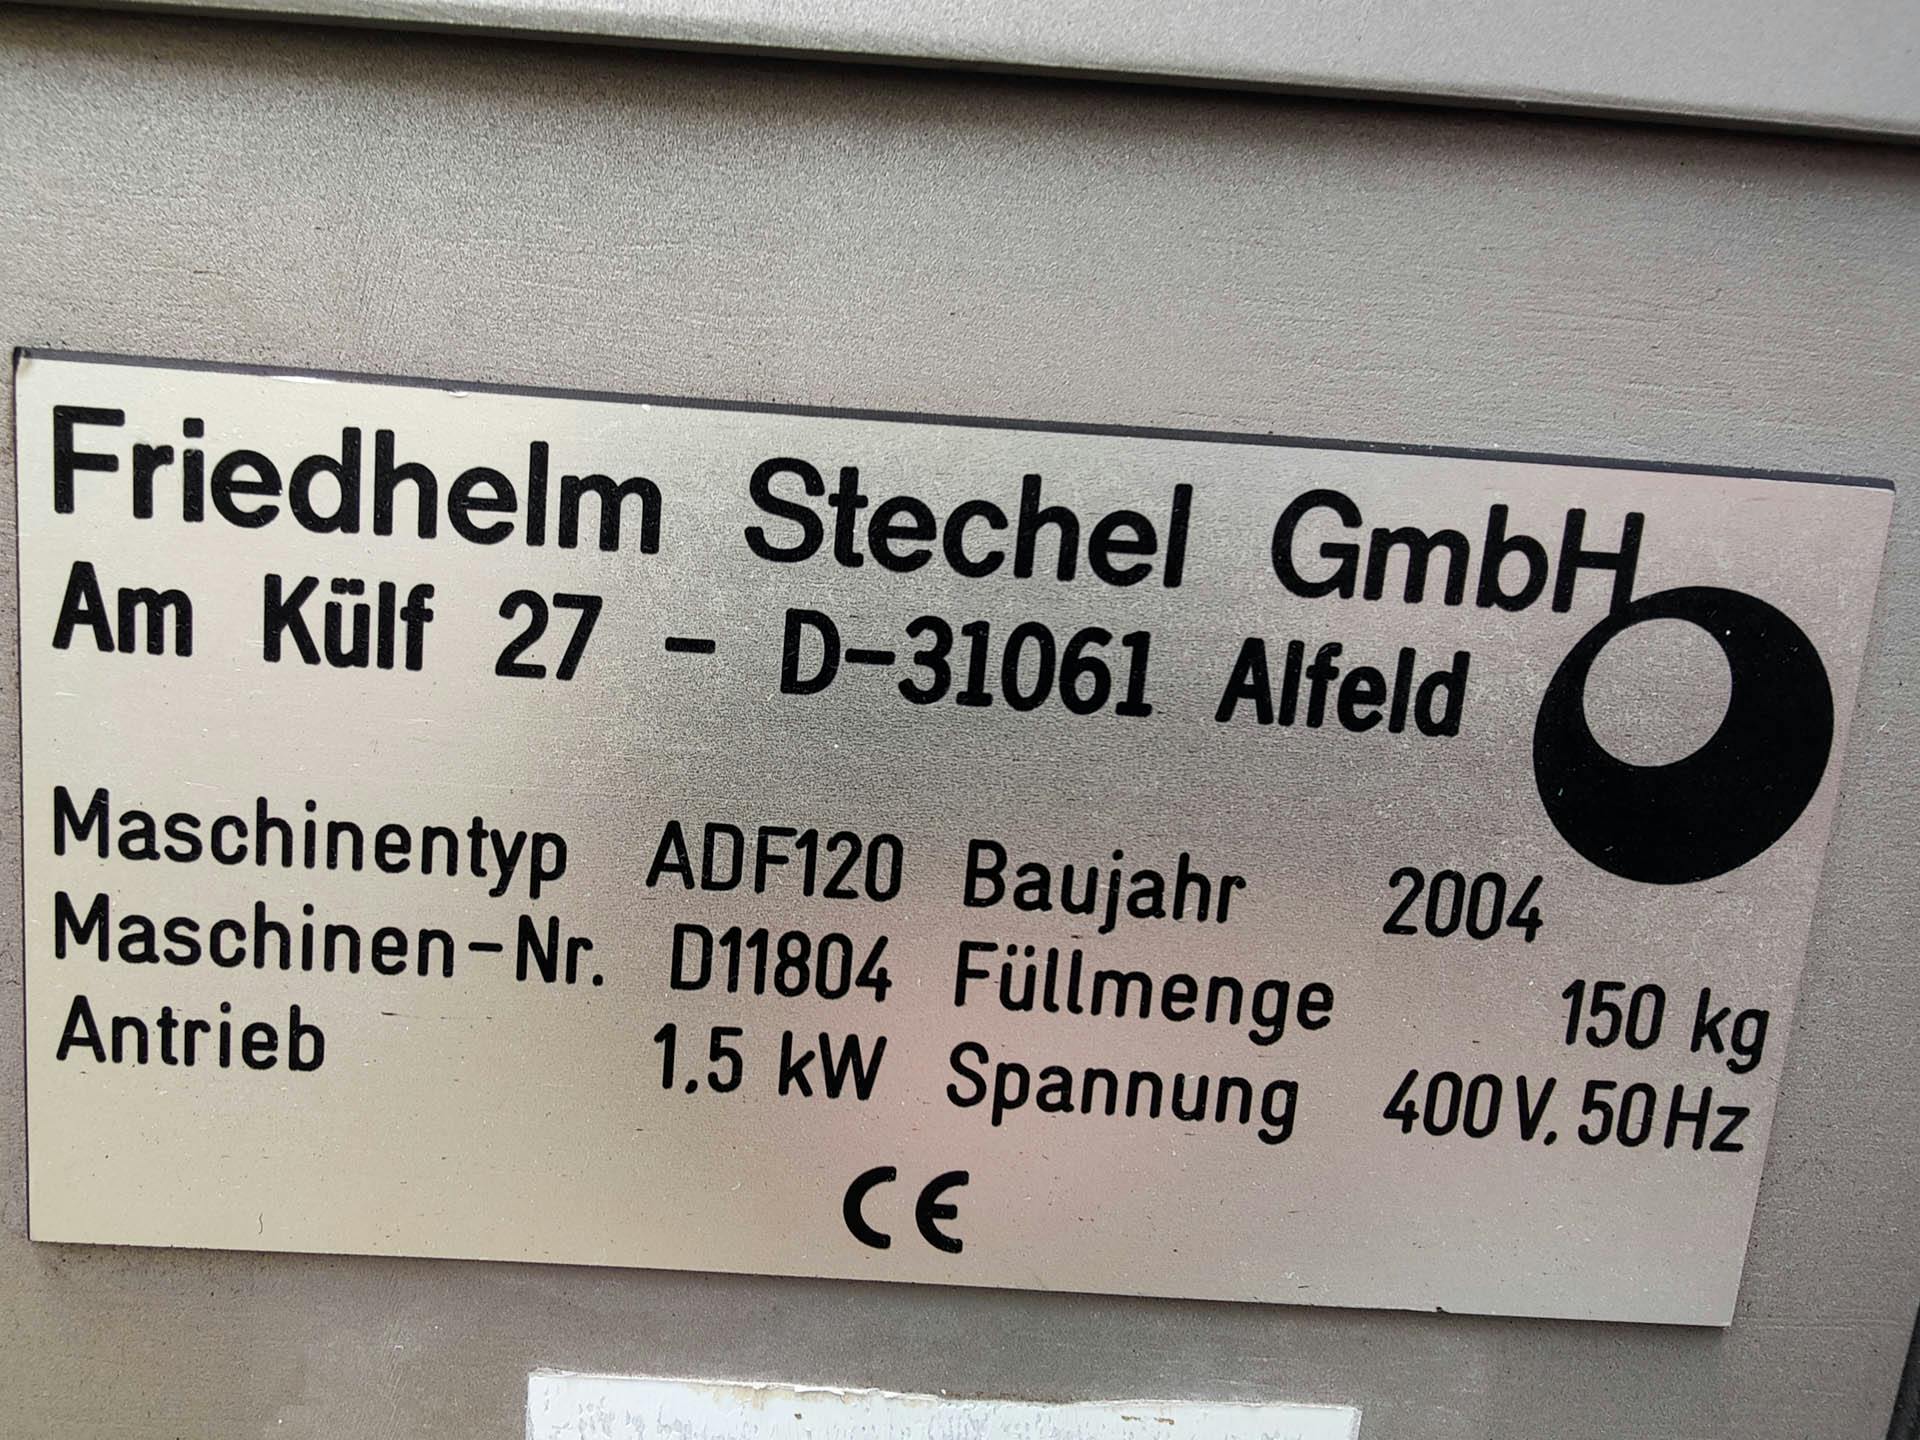 Friedhelm Stechel ADF-120 - Bandeja de revestimento - image 10